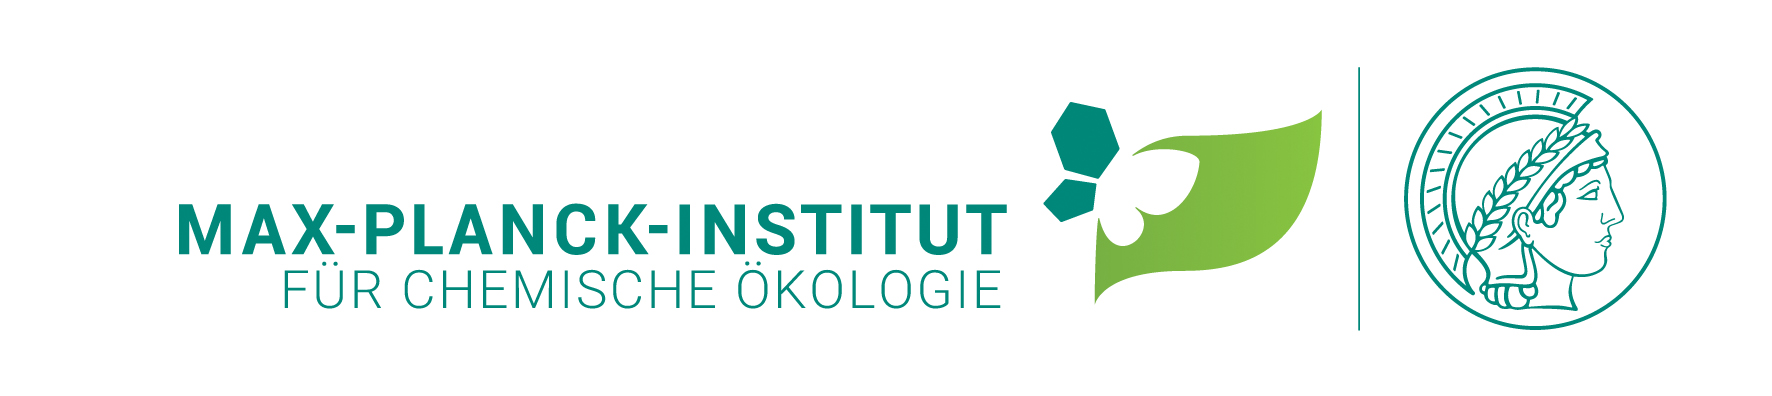 Logo: Max-Planck-Institut für chemische Ökologie